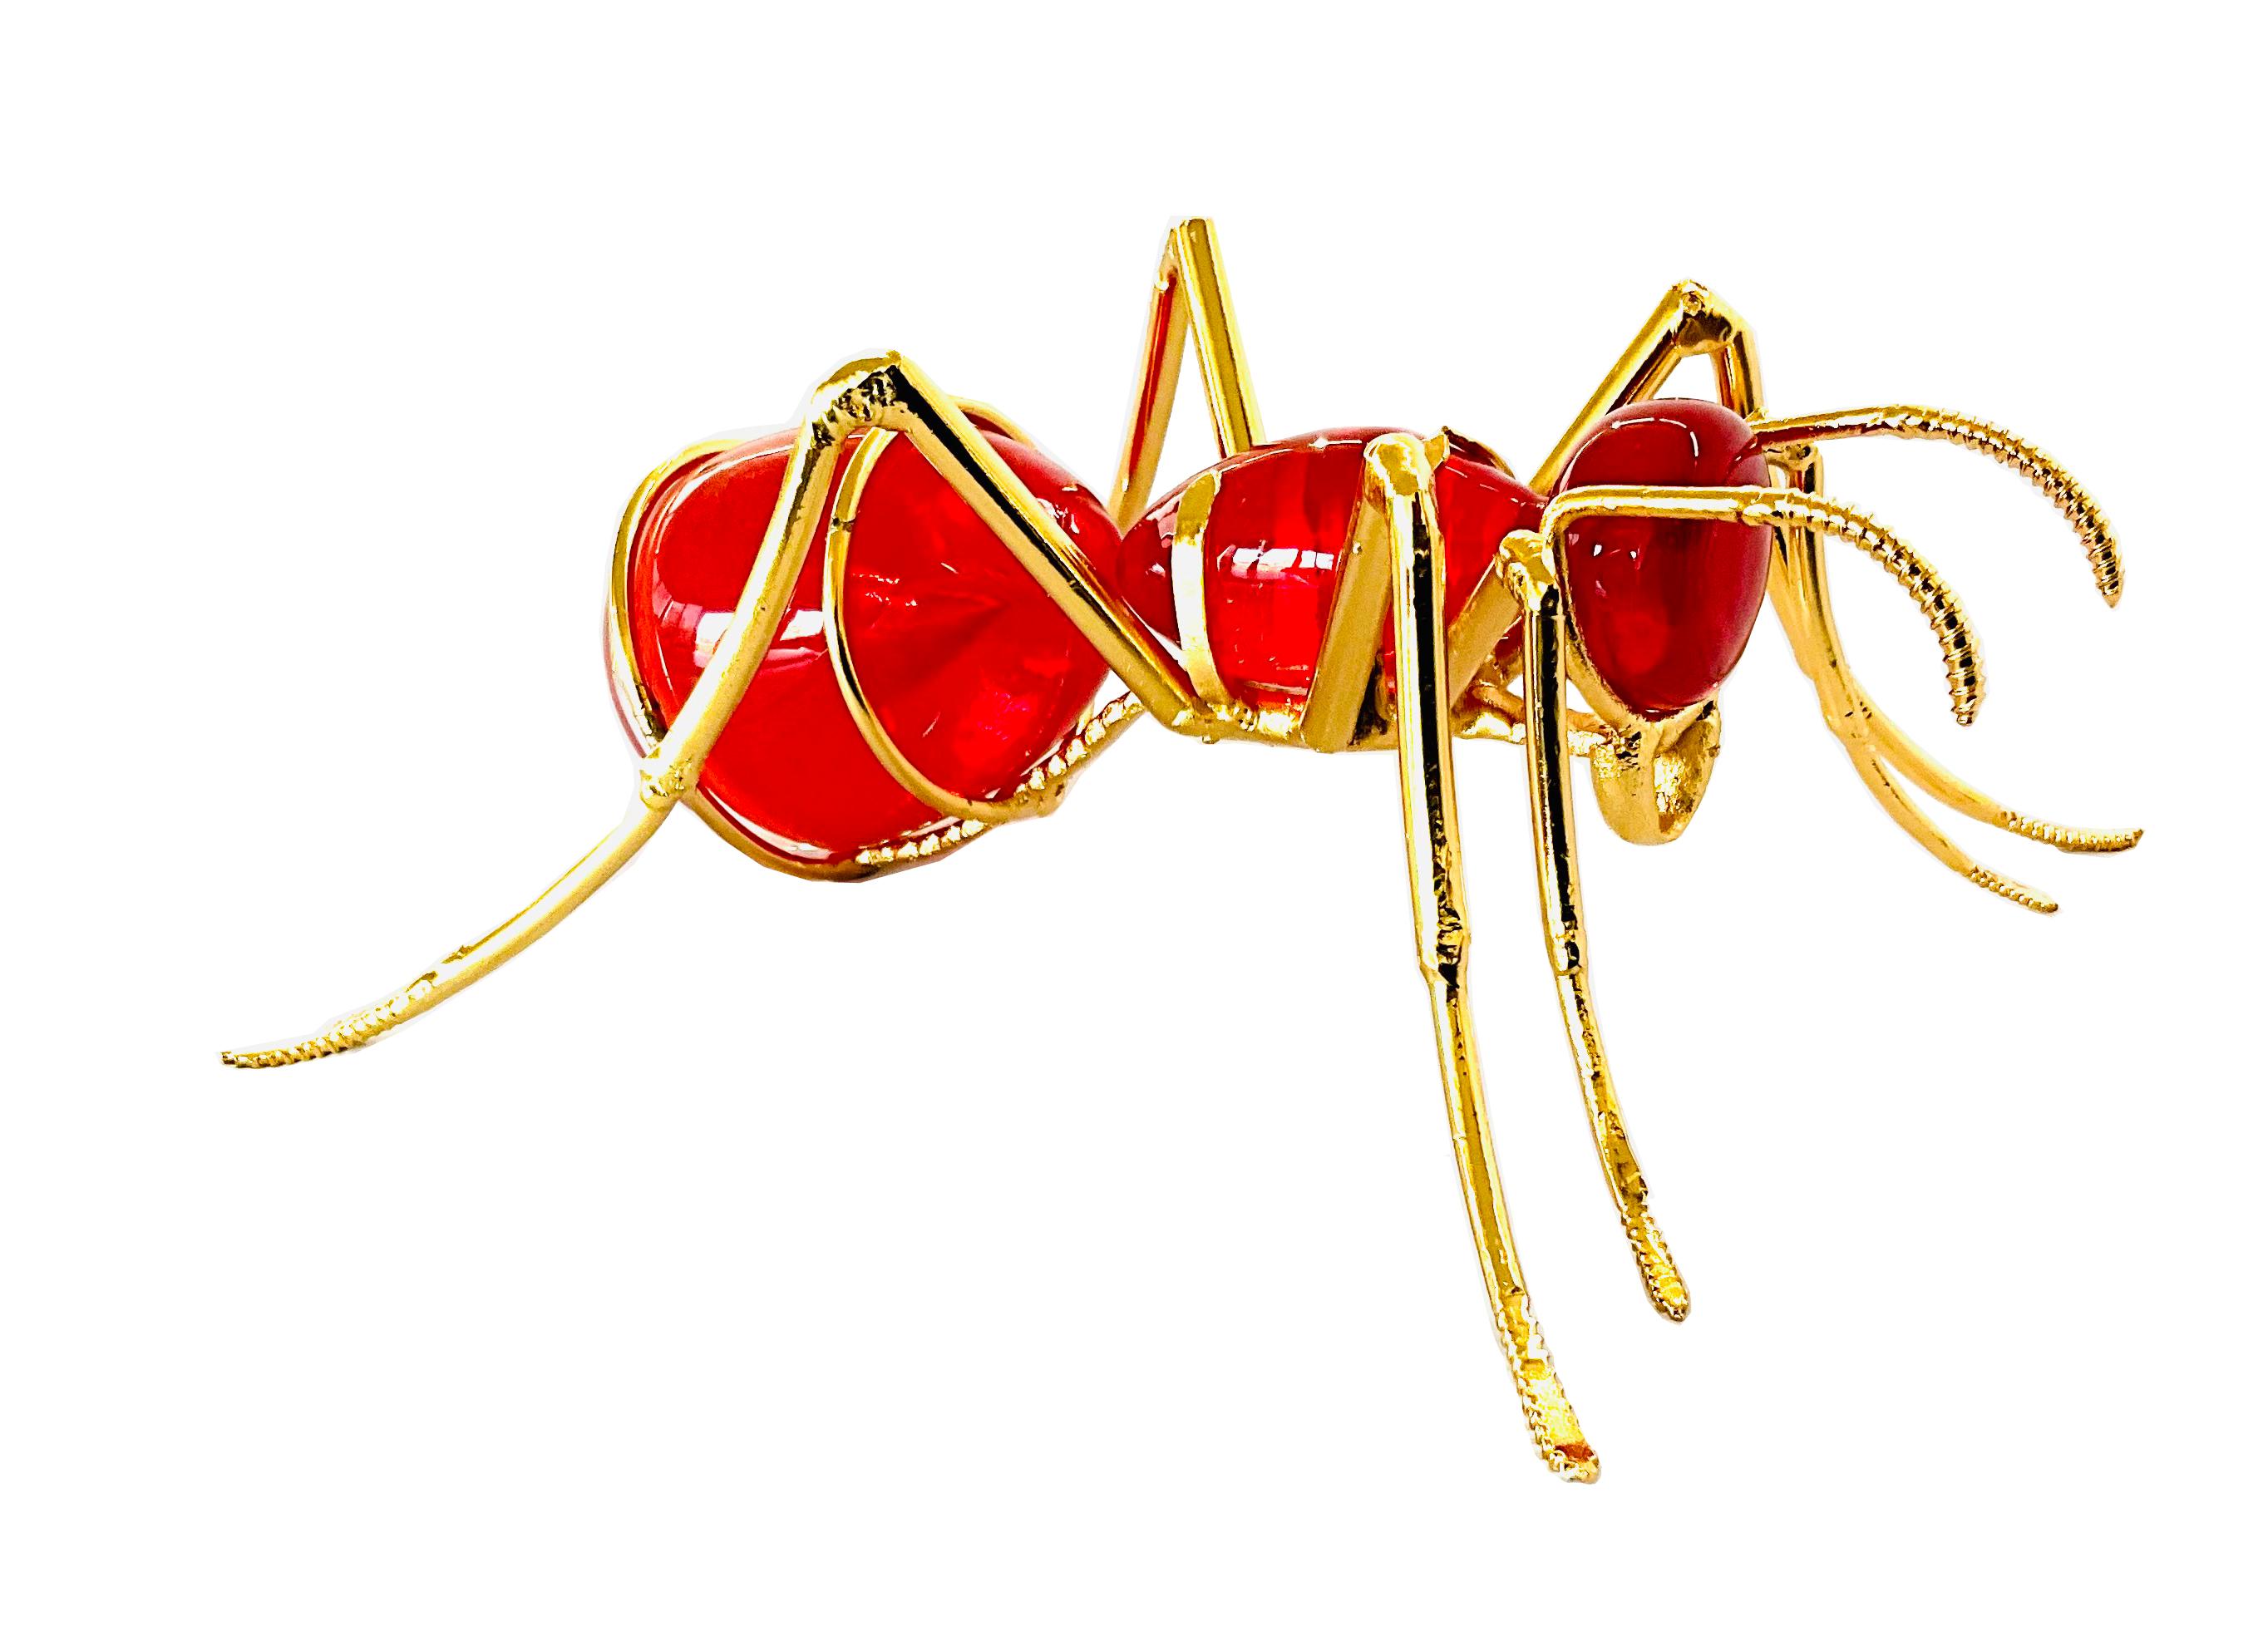 La fourmi, plaqué or et verre rouge

La sculpture de Marcos Romero, représentant une fourmi faite de fer industriel recyclé et de verre soufflé, est une œuvre d'art contemporain fascinante. Romero a créé une pièce qui combine la dureté et la